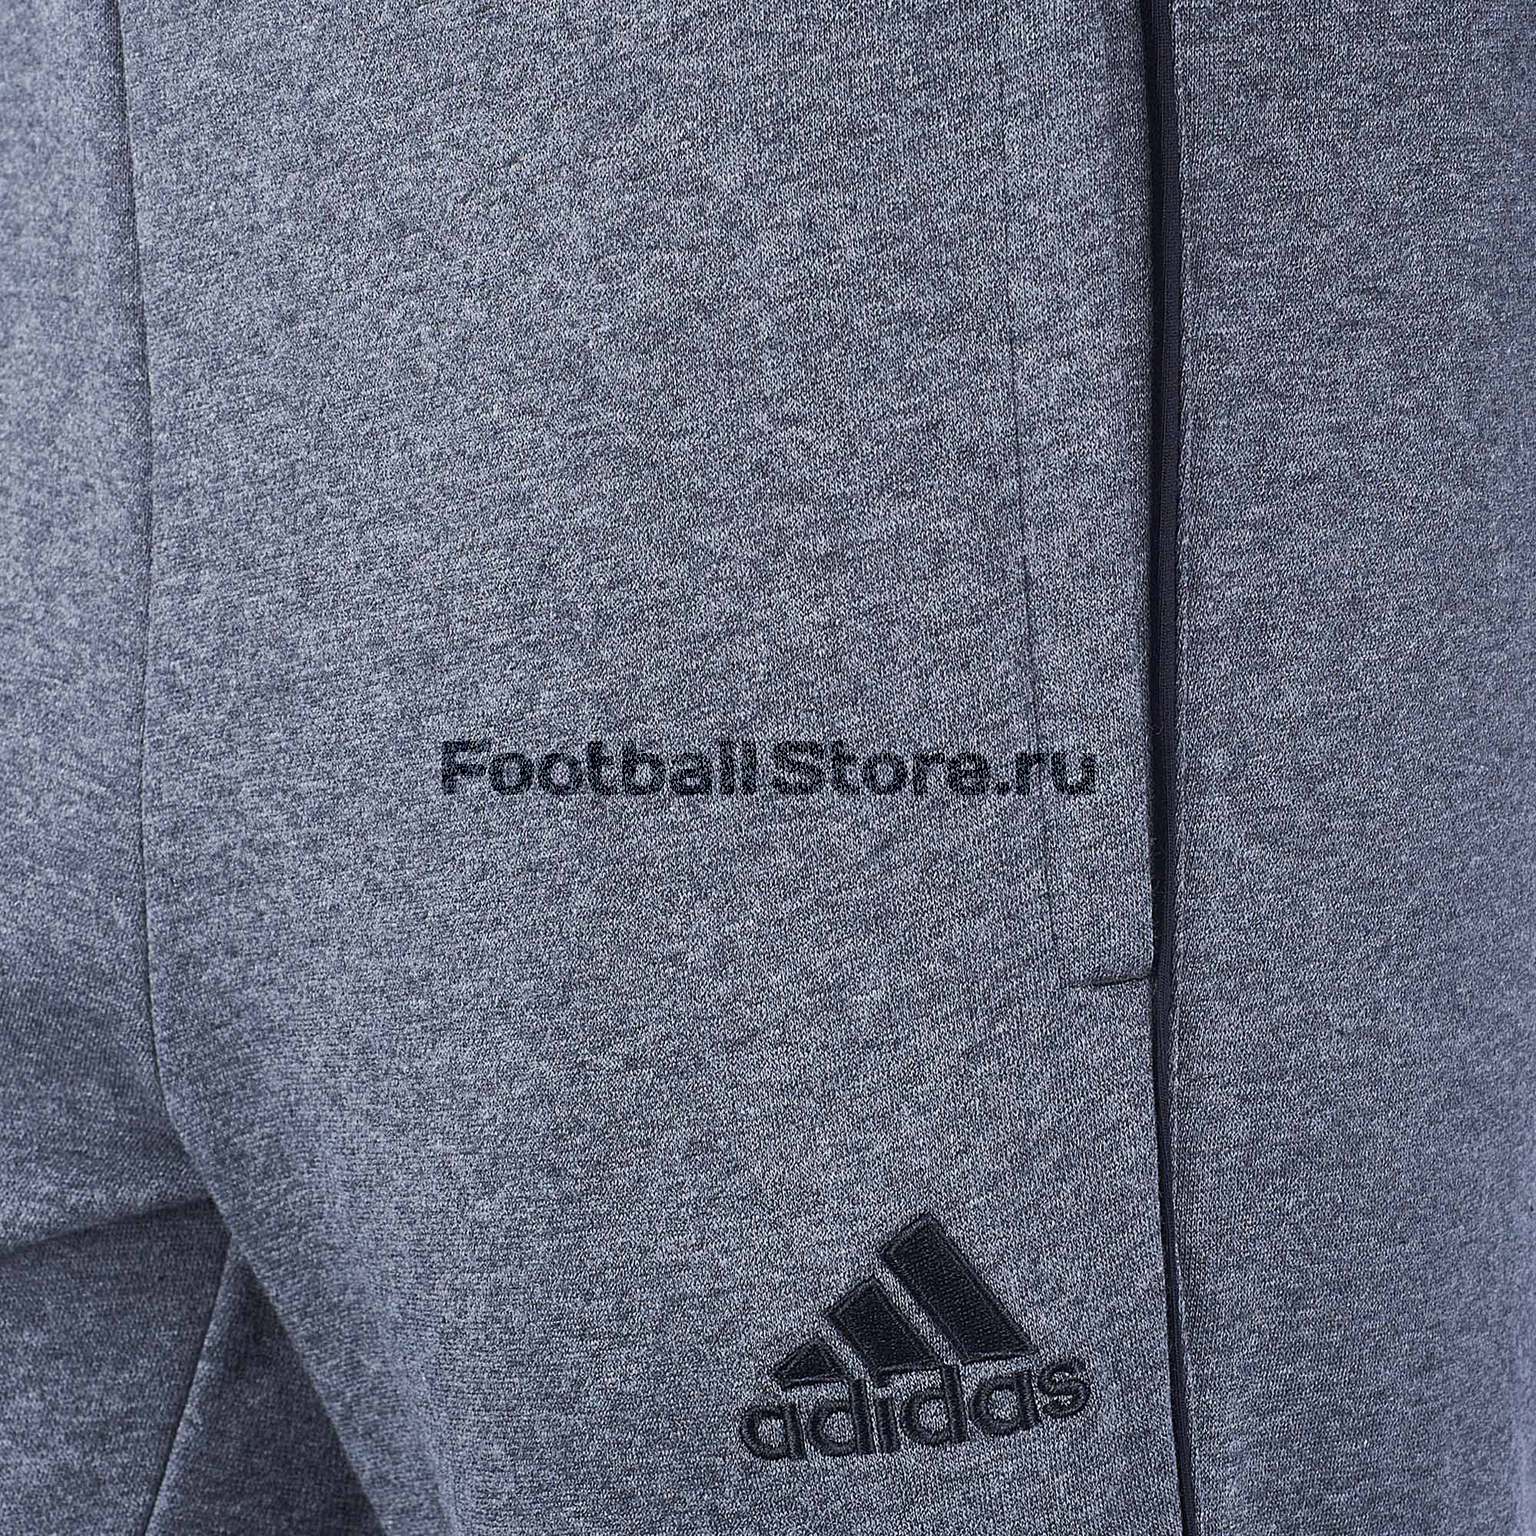 Брюки тренировочные Adidas Core18 SW Pnt CV3752 – купить в интернет  магазине footballstore, цена, фото